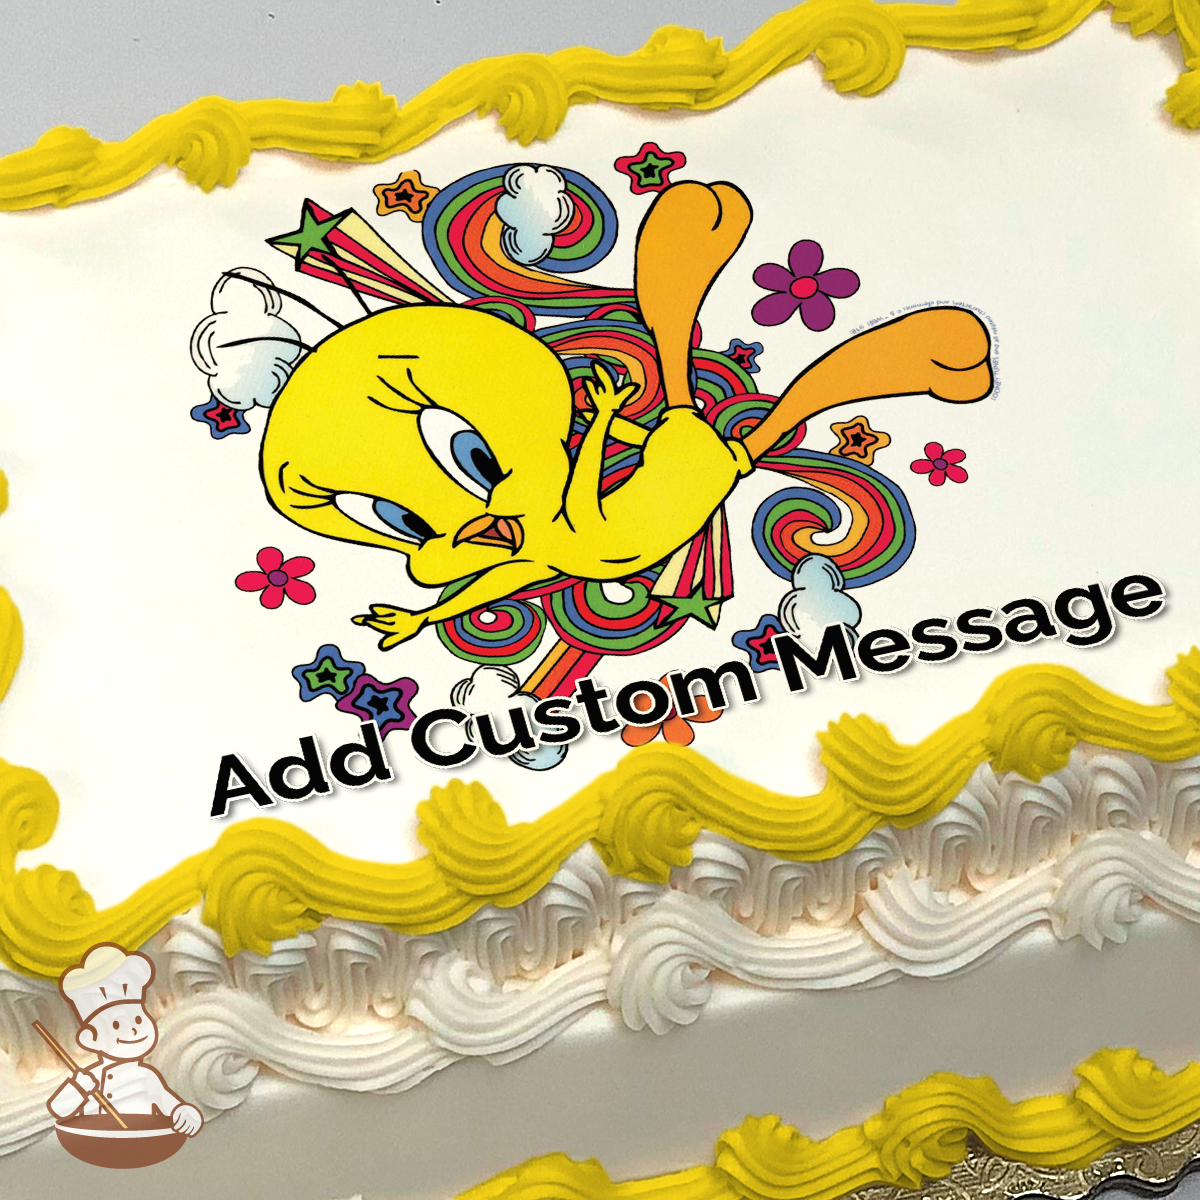 50 Tweety Cake Design (Cake Idea) - October 2019 | Tweety cake, Tweety, Cake